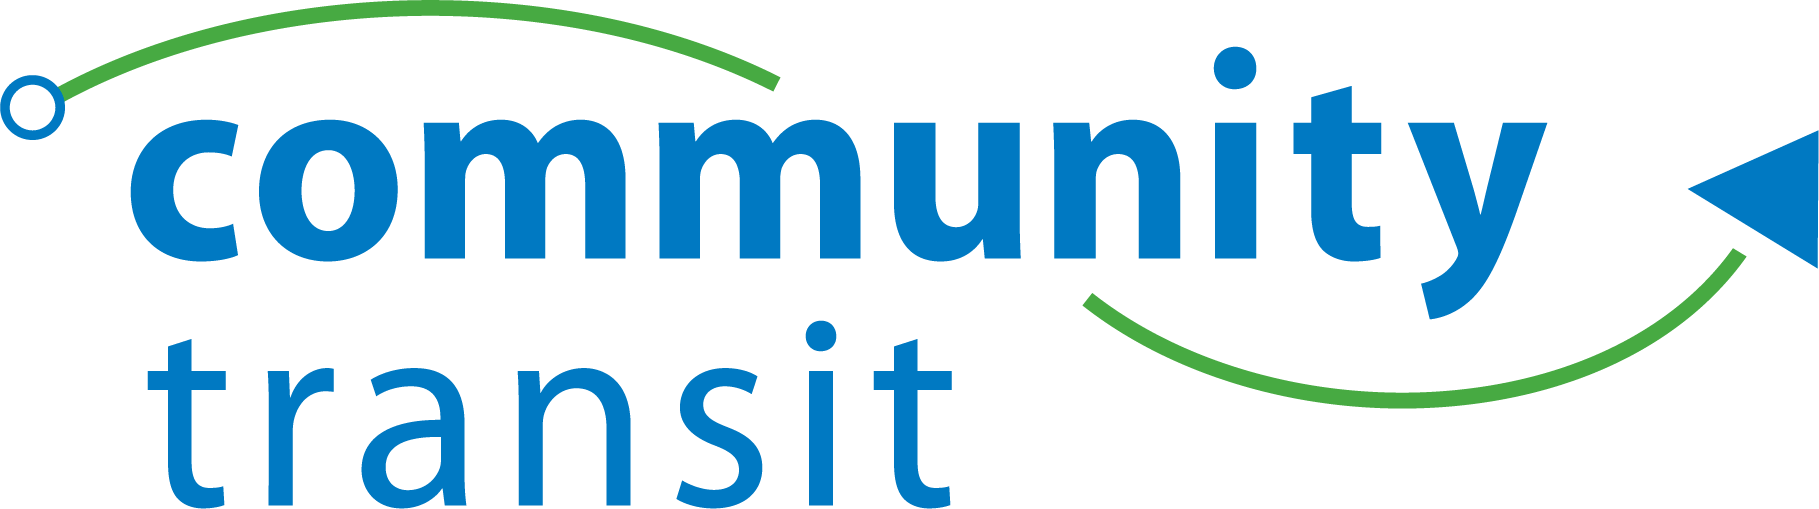 Community Transit logo